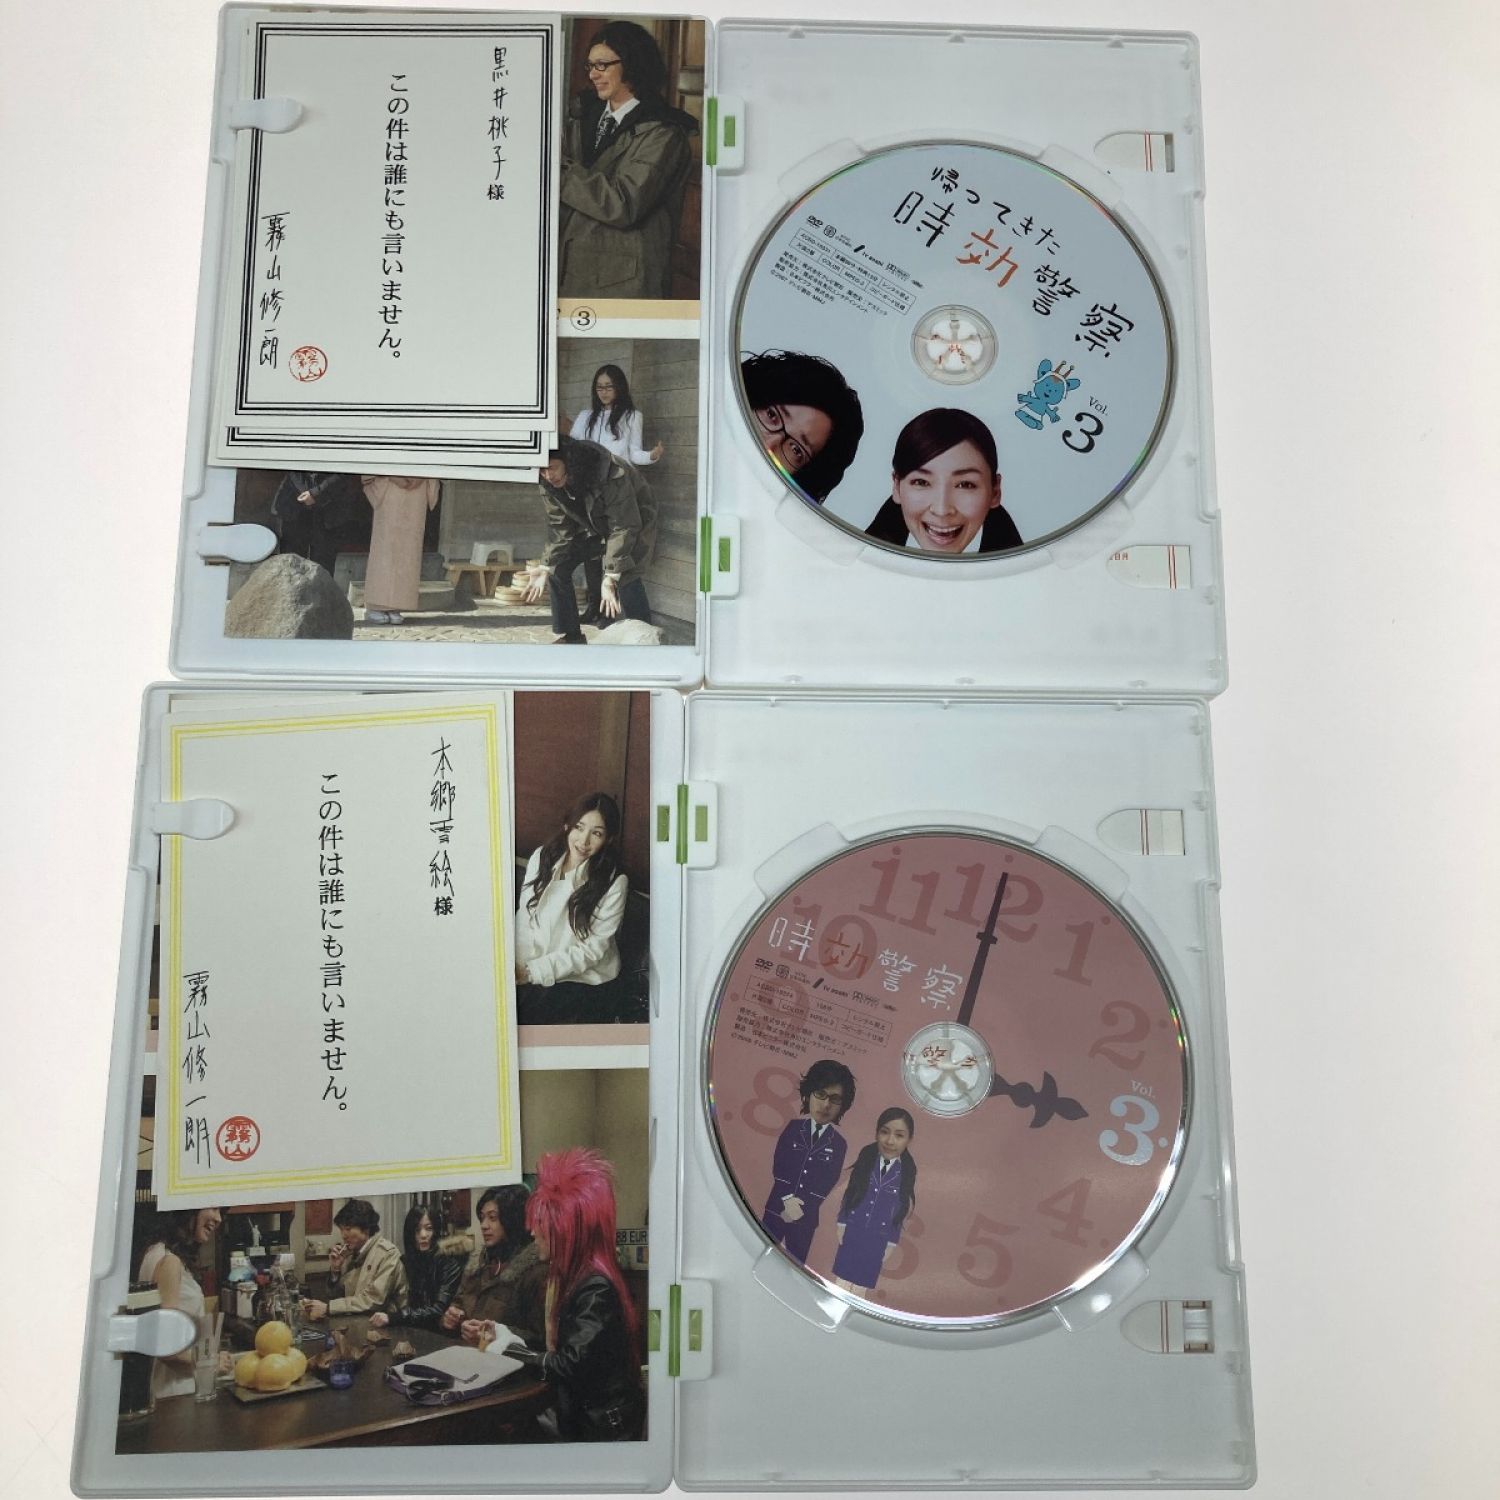 時効警察 DVD-BOX